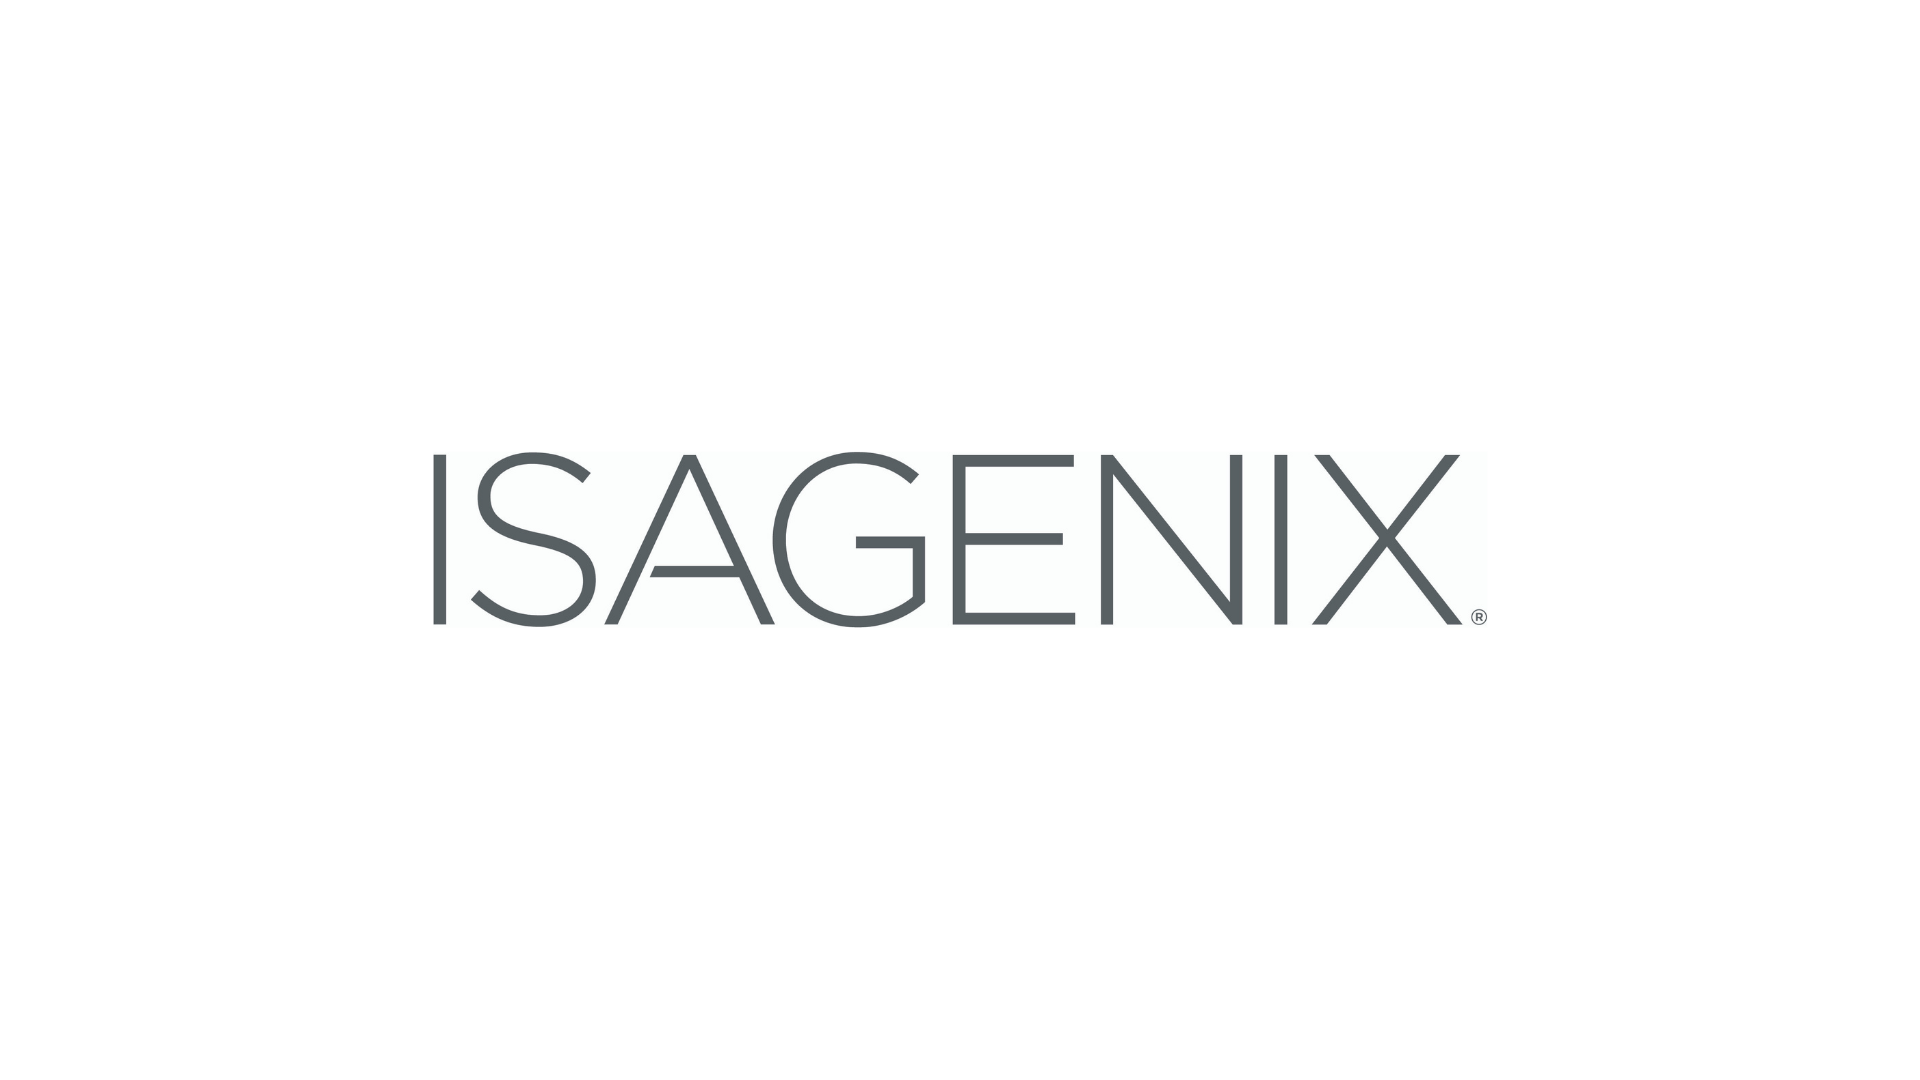 Isagenix ने एरिज़ोना में काम करने वाली 2021 की शीर्ष कंपनियों में से एक का नाम दिया – डायरेक्ट सेलिंग न्यूज़